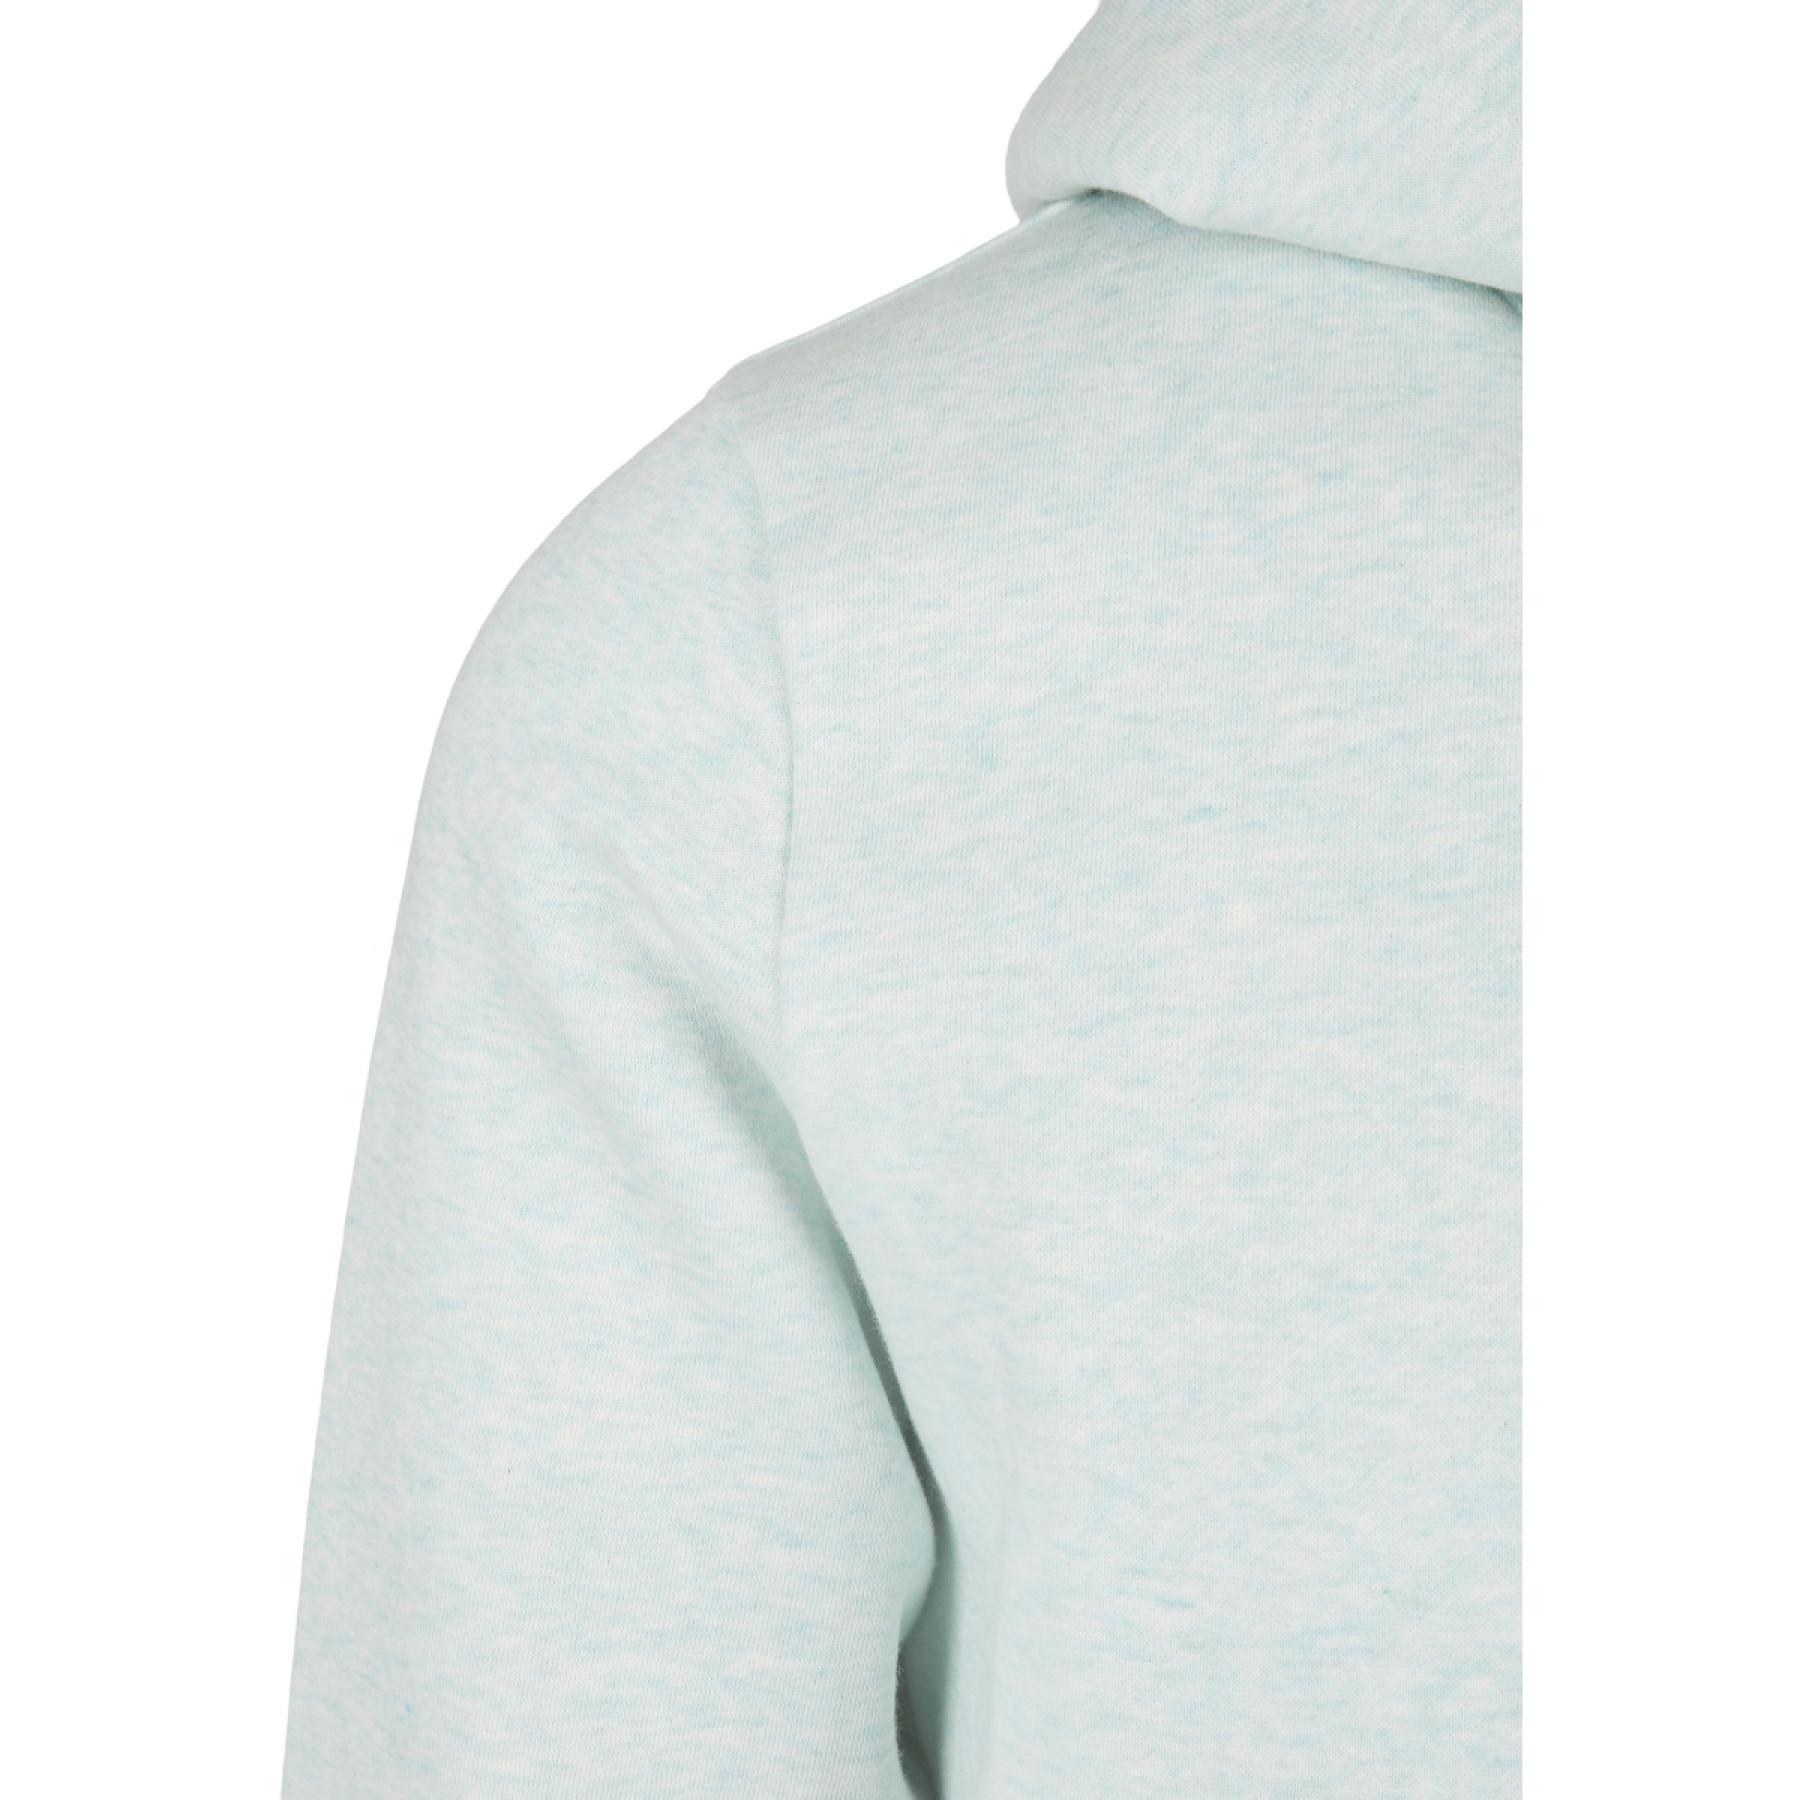 Sweatshirt Urban Classics basic melange- large sizes